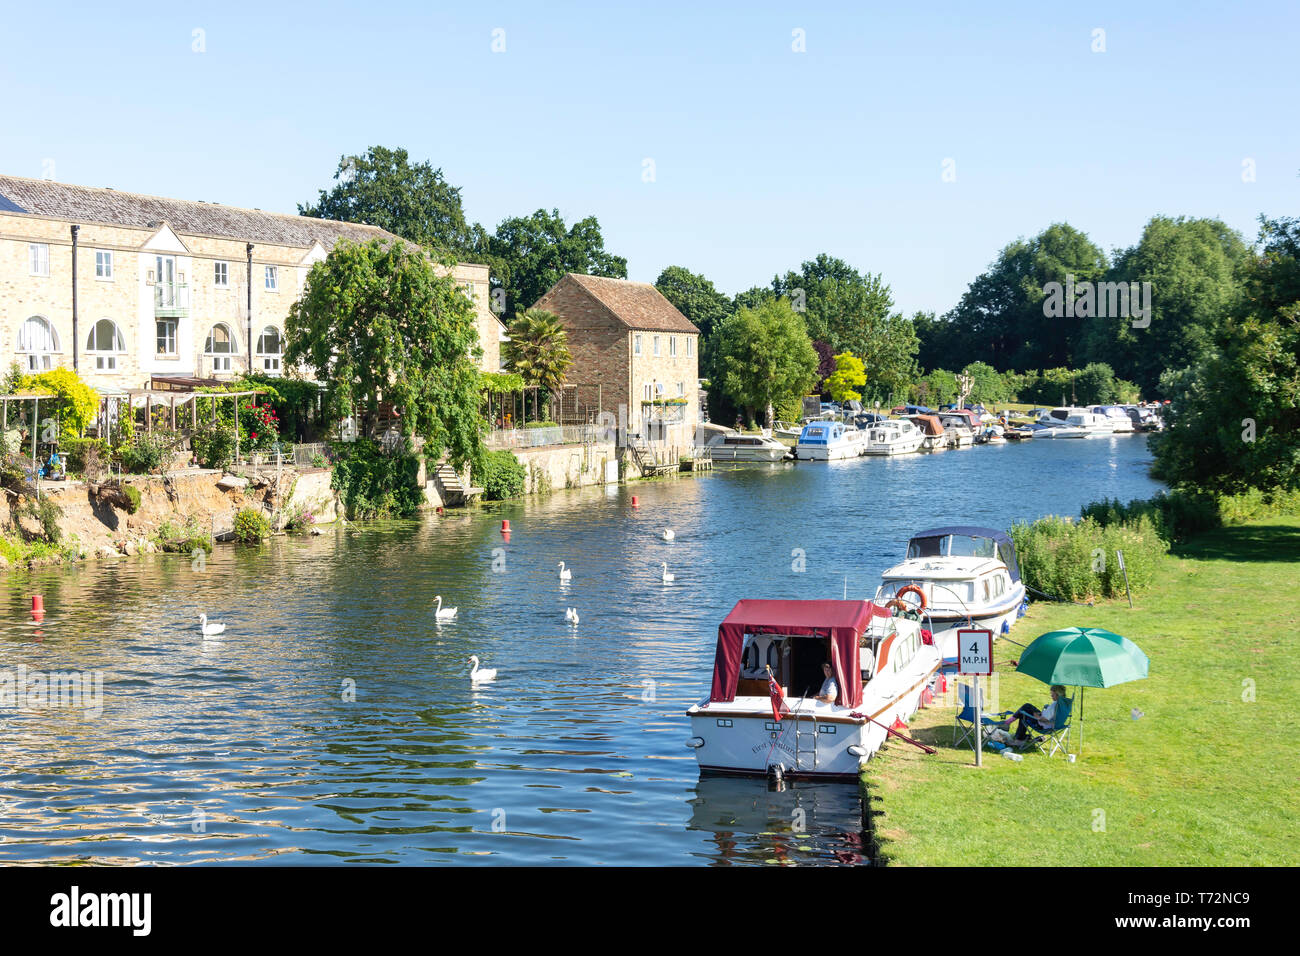 Parc en bord de rivière, de la rivière Great Ouse, St Neots, Cambridgeshire, Angleterre, Royaume-Uni Banque D'Images